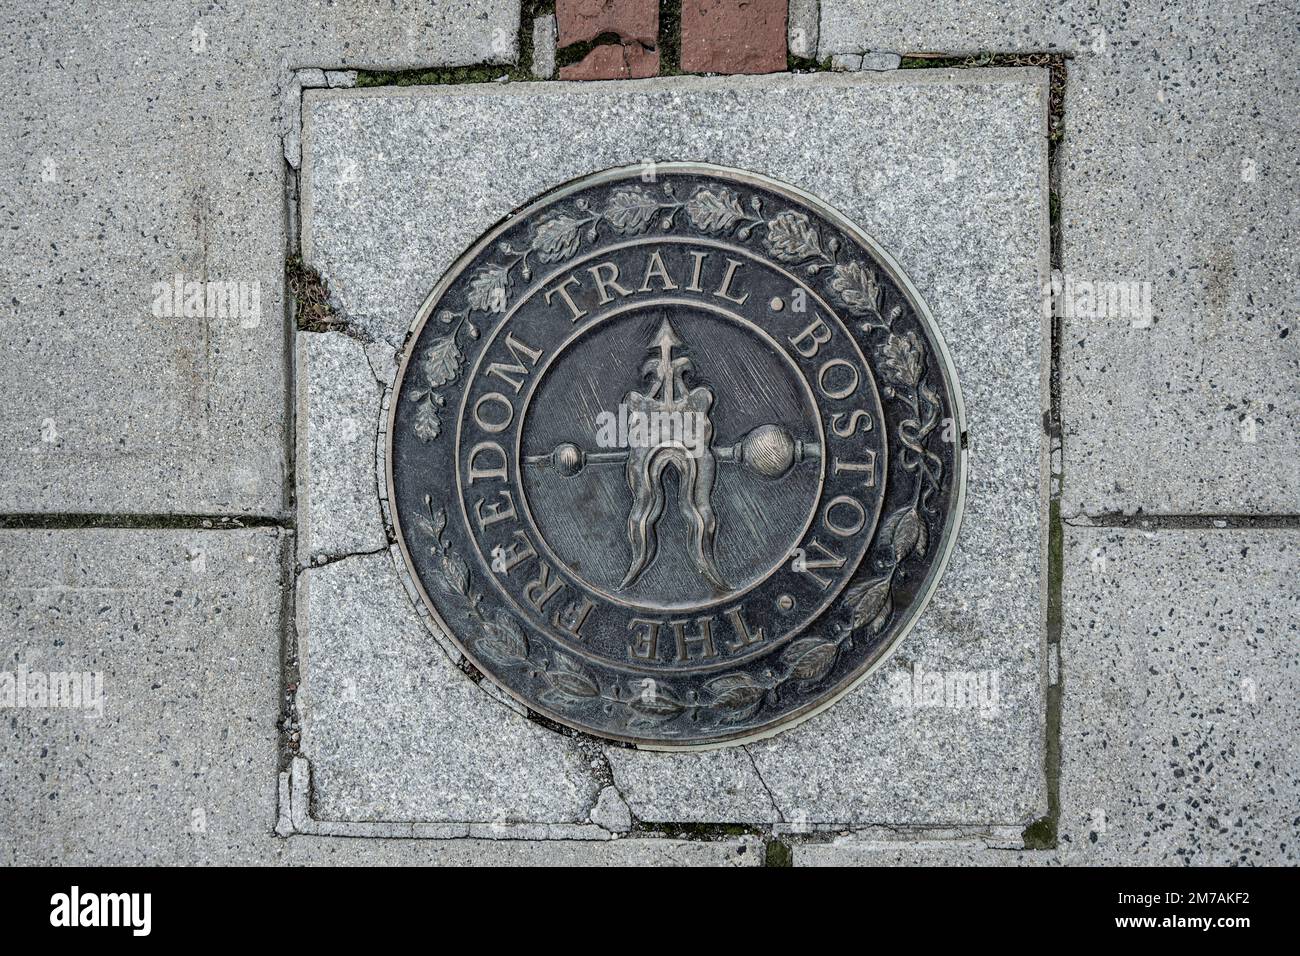 Emblème de trottoir du Boston Freedom Trail pointant dans la direction du sentier de randonnée utilisé par les historiens et les touristes Banque D'Images